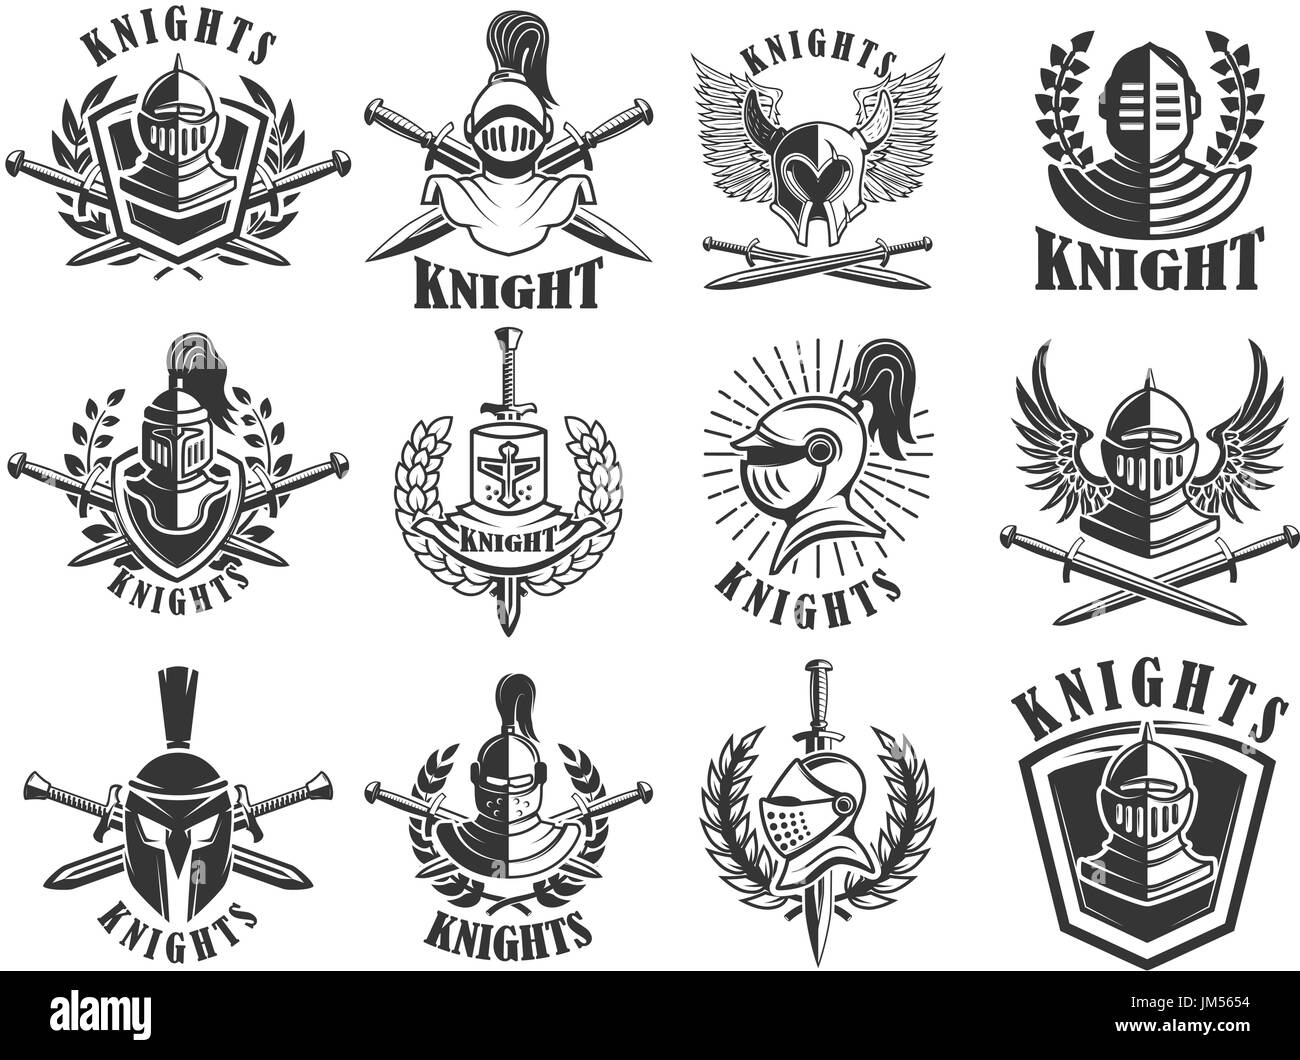 Set of knight emblems. Design elements for logo, label, emblem, sign, badge. Vector illustration Stock Vector